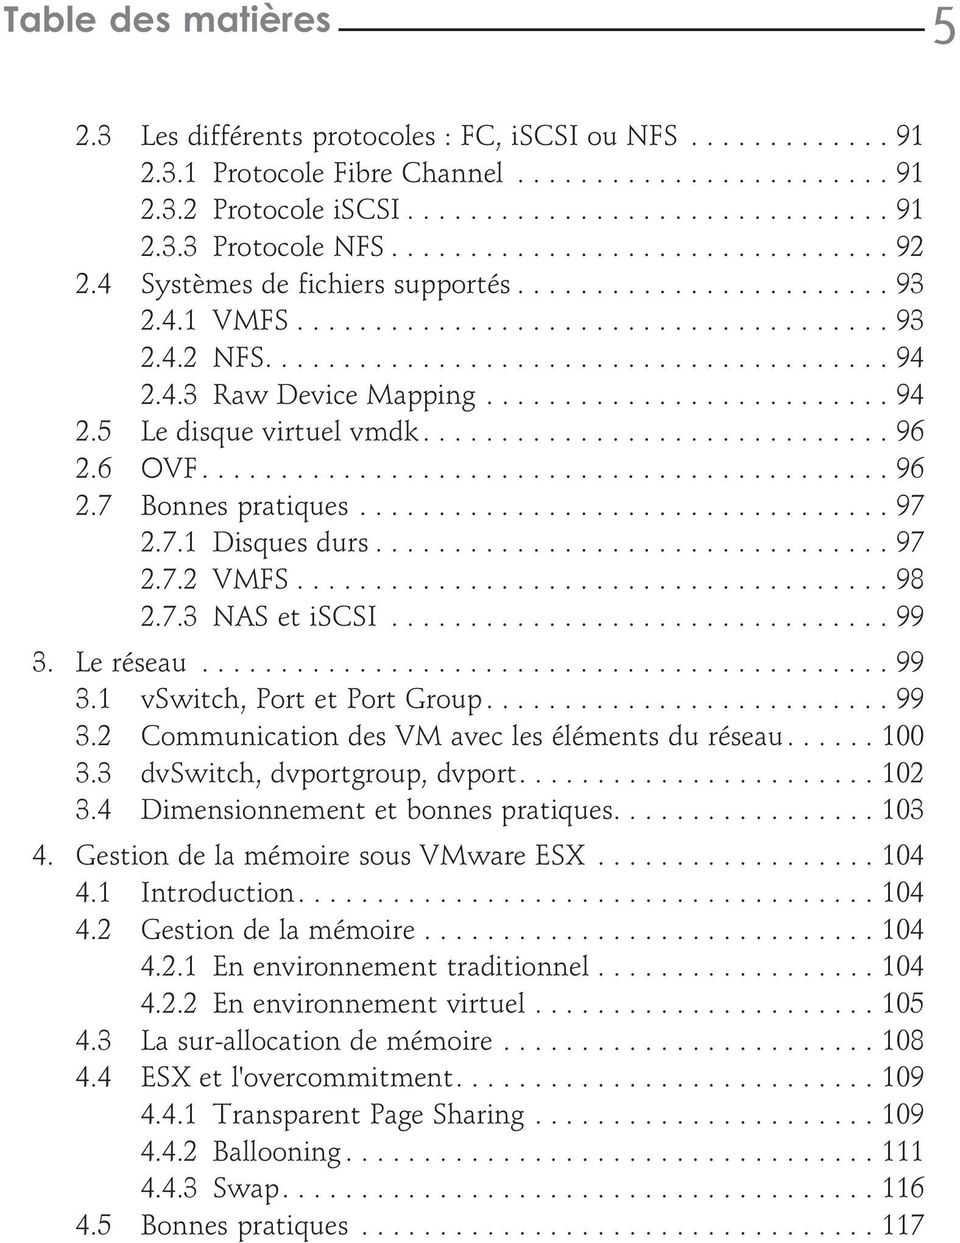 ..99 3. Le réseau...99 3.1 vswitch, Port et Port Group... 99 3.2 Communication des VM avec les éléments du réseau...100 3.3 dvswitch, dvportgroup, dvport.... 102 3.